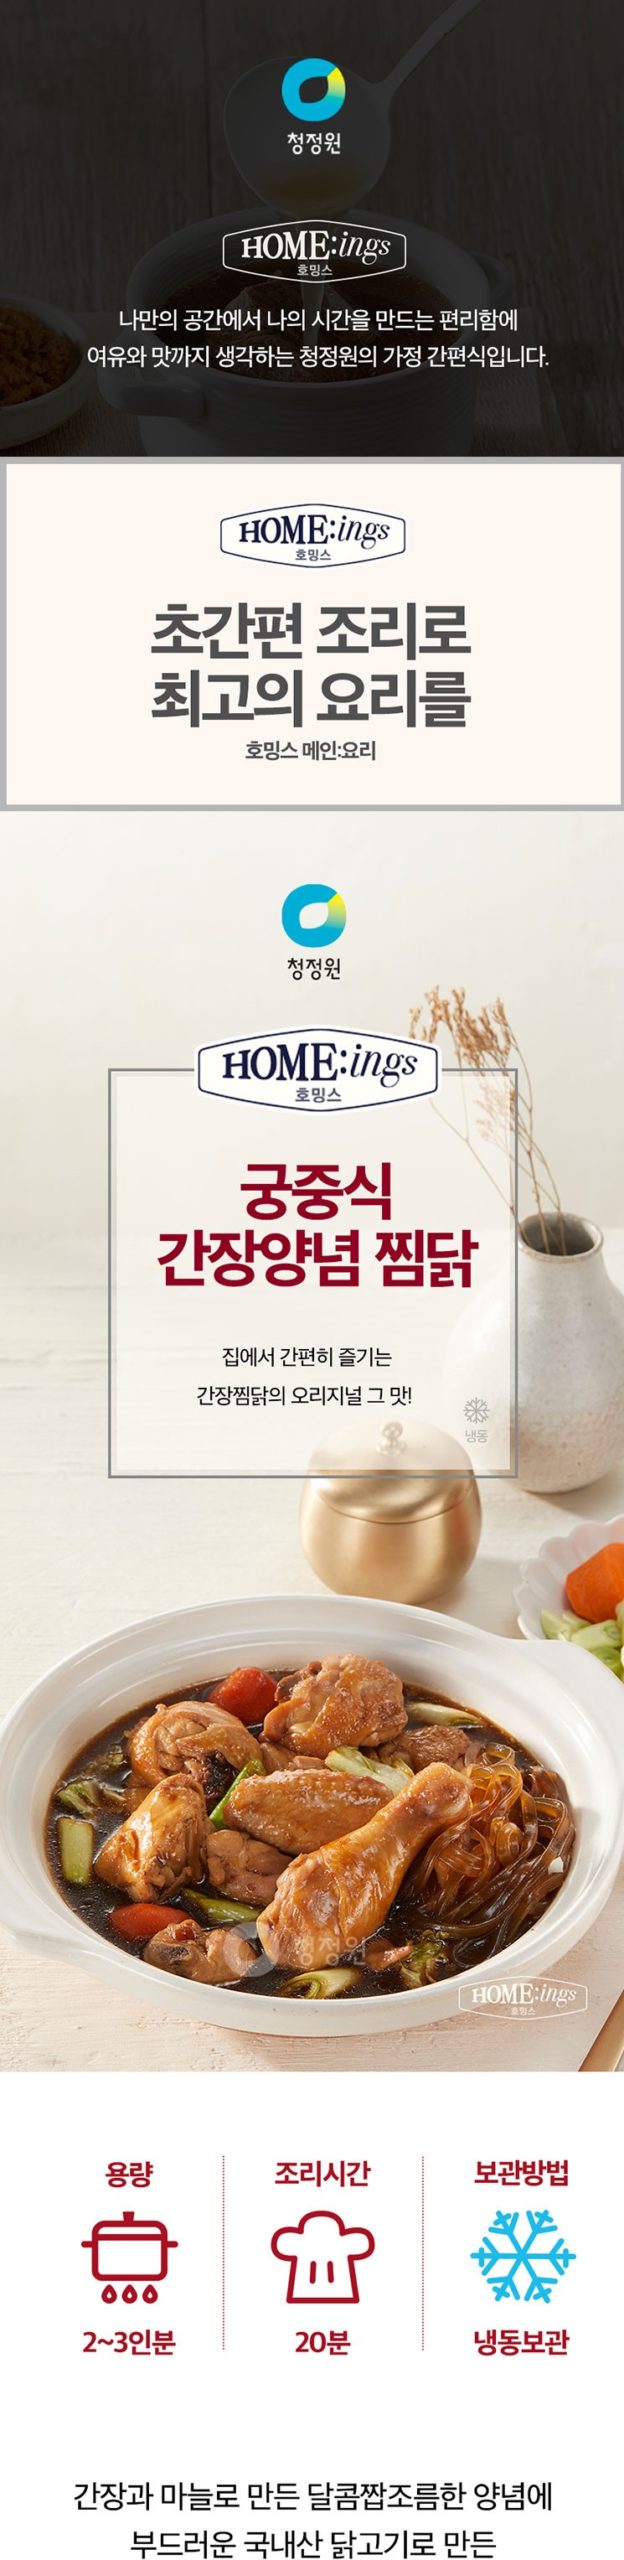 韓國食品-[CJO] Home:ings 安東式燉雞 670g